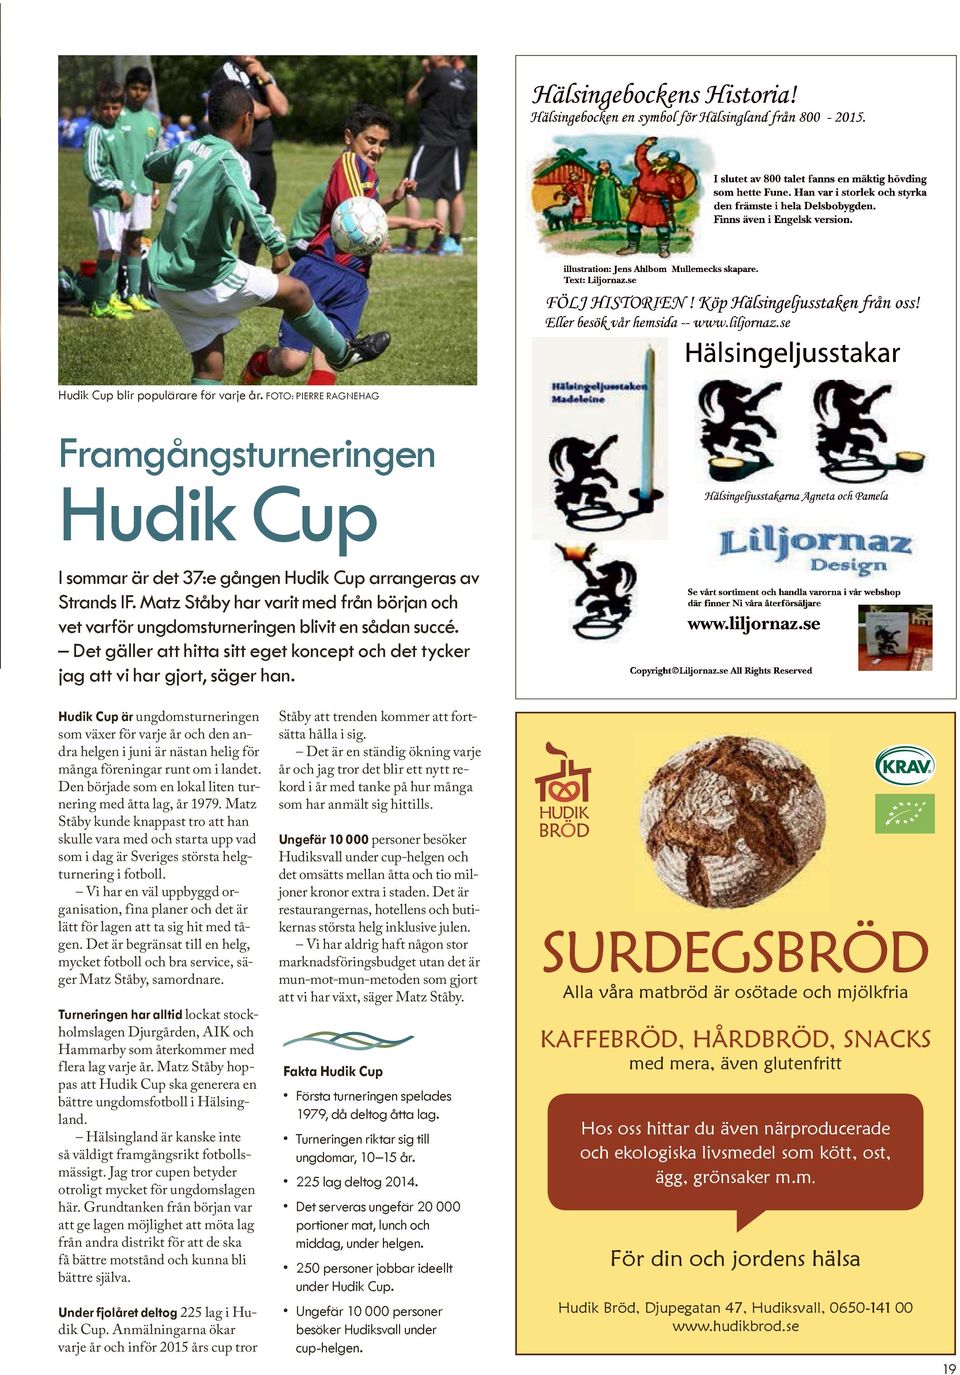 Hudik Cup är ungdomsturneringen som växer för varje år och den andra helgen i juni är nästan helig för många föreningar runt om i landet.